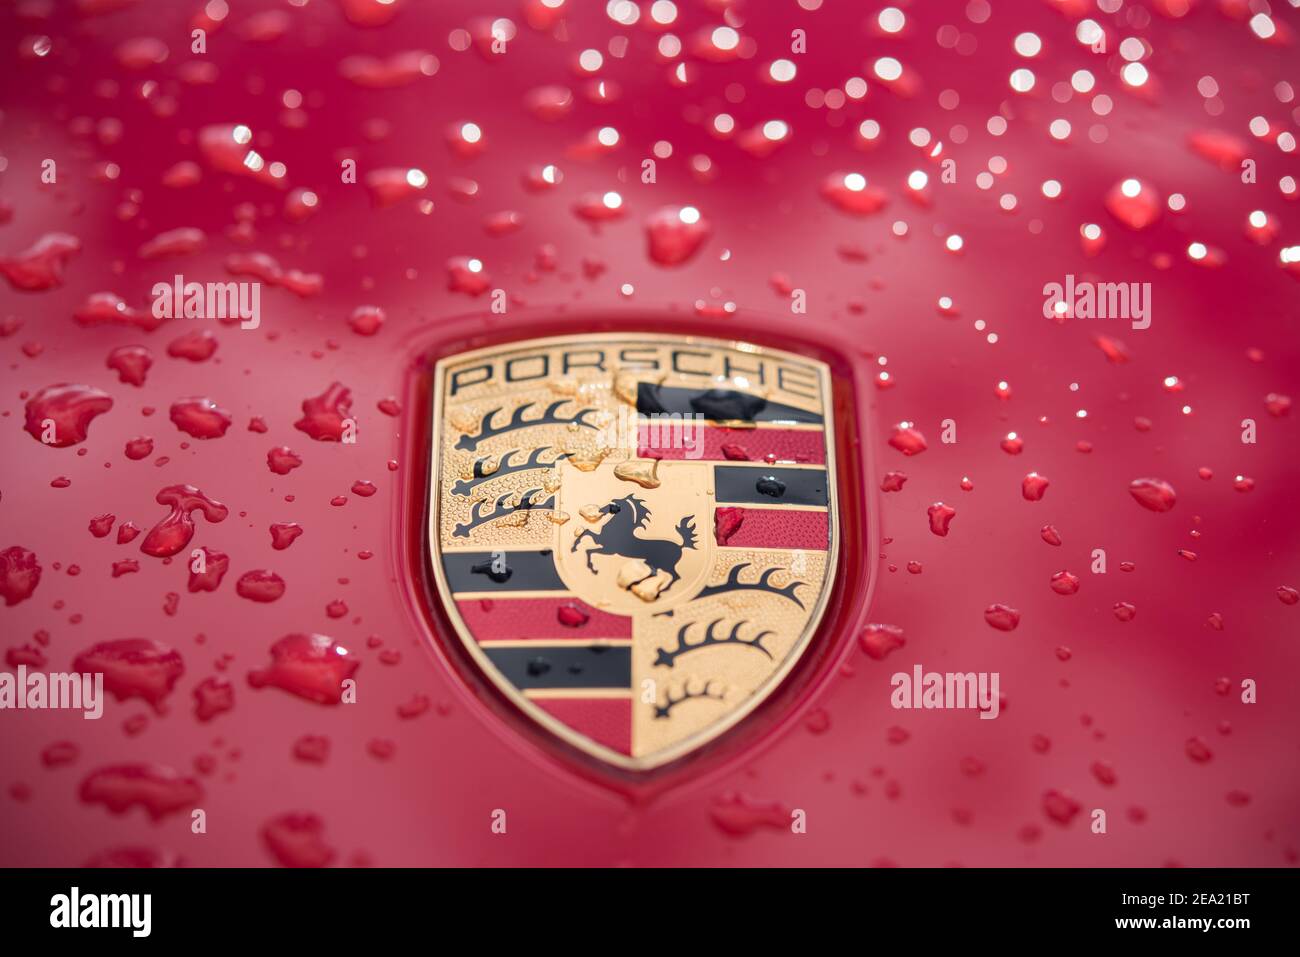 Porsche logo on a golden mosaic - desktop wallpapers